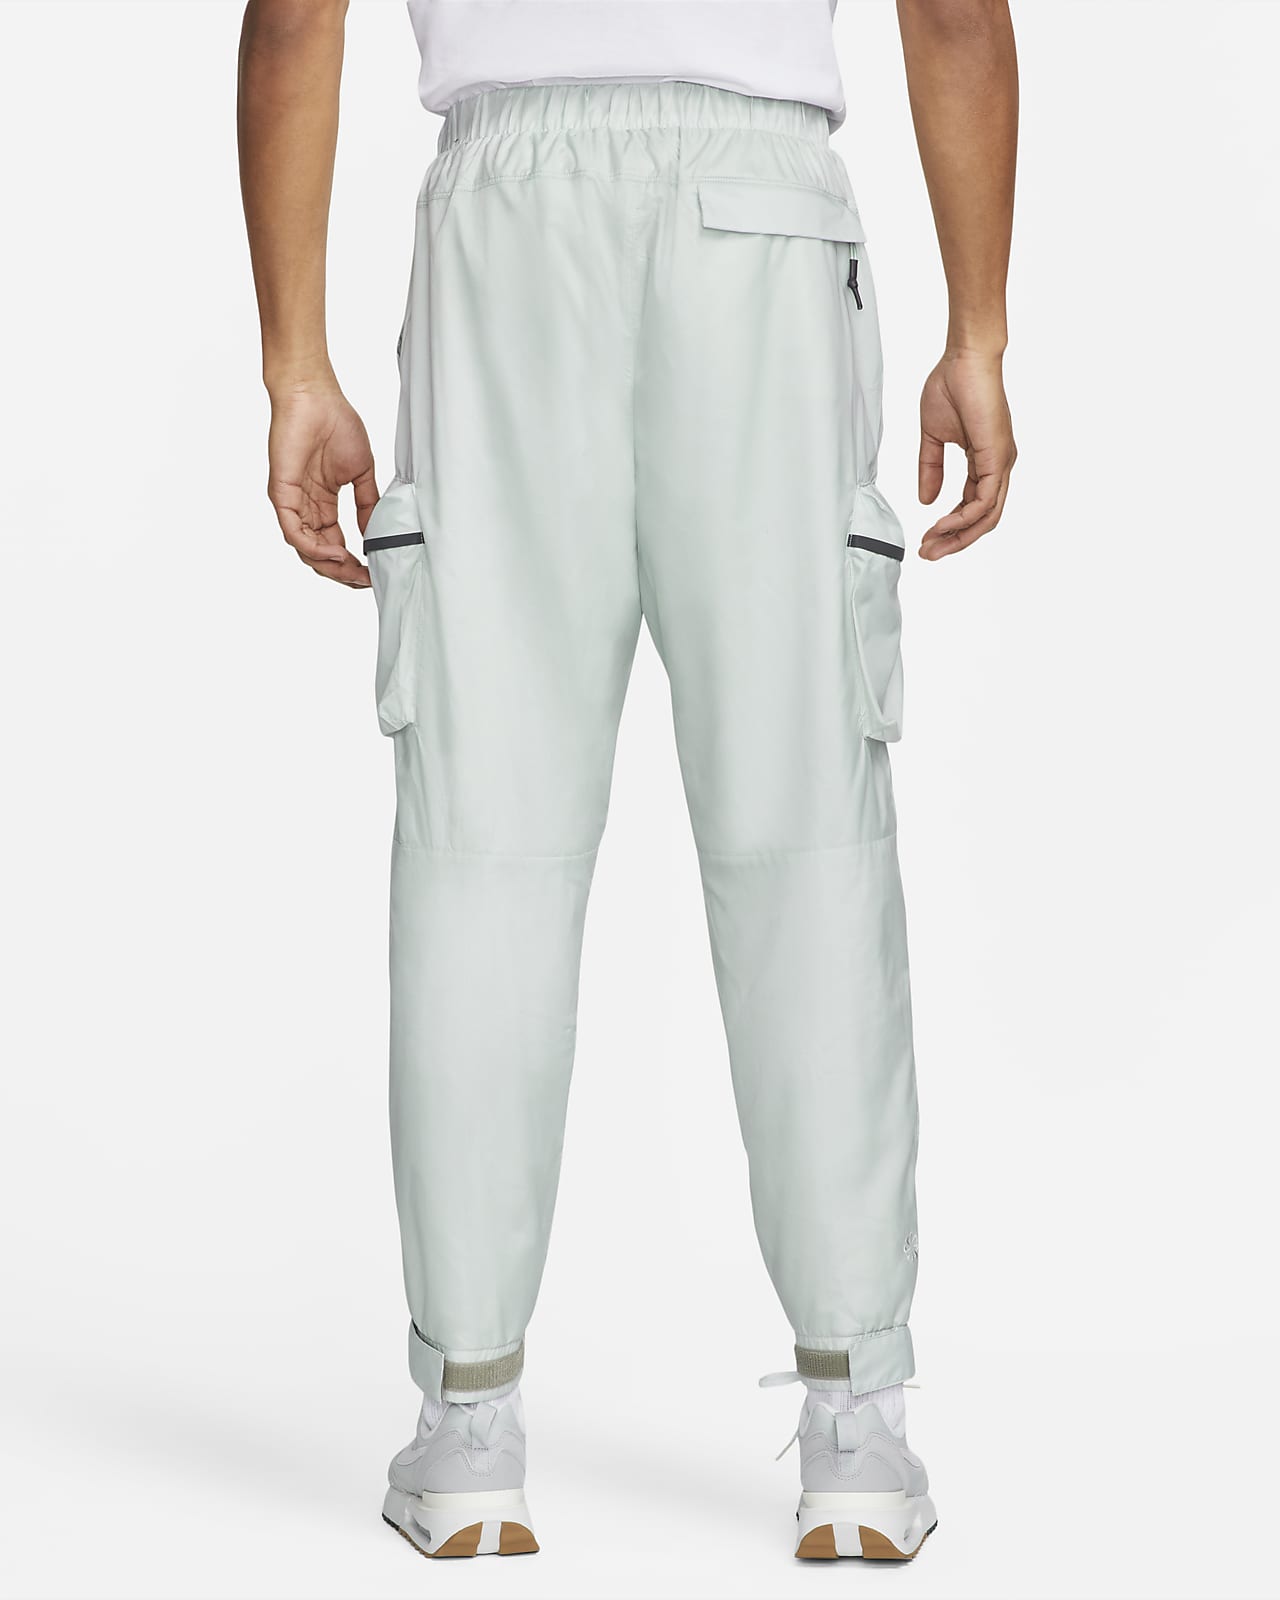 Nike Sportswear Pack Men's Lined Pants.